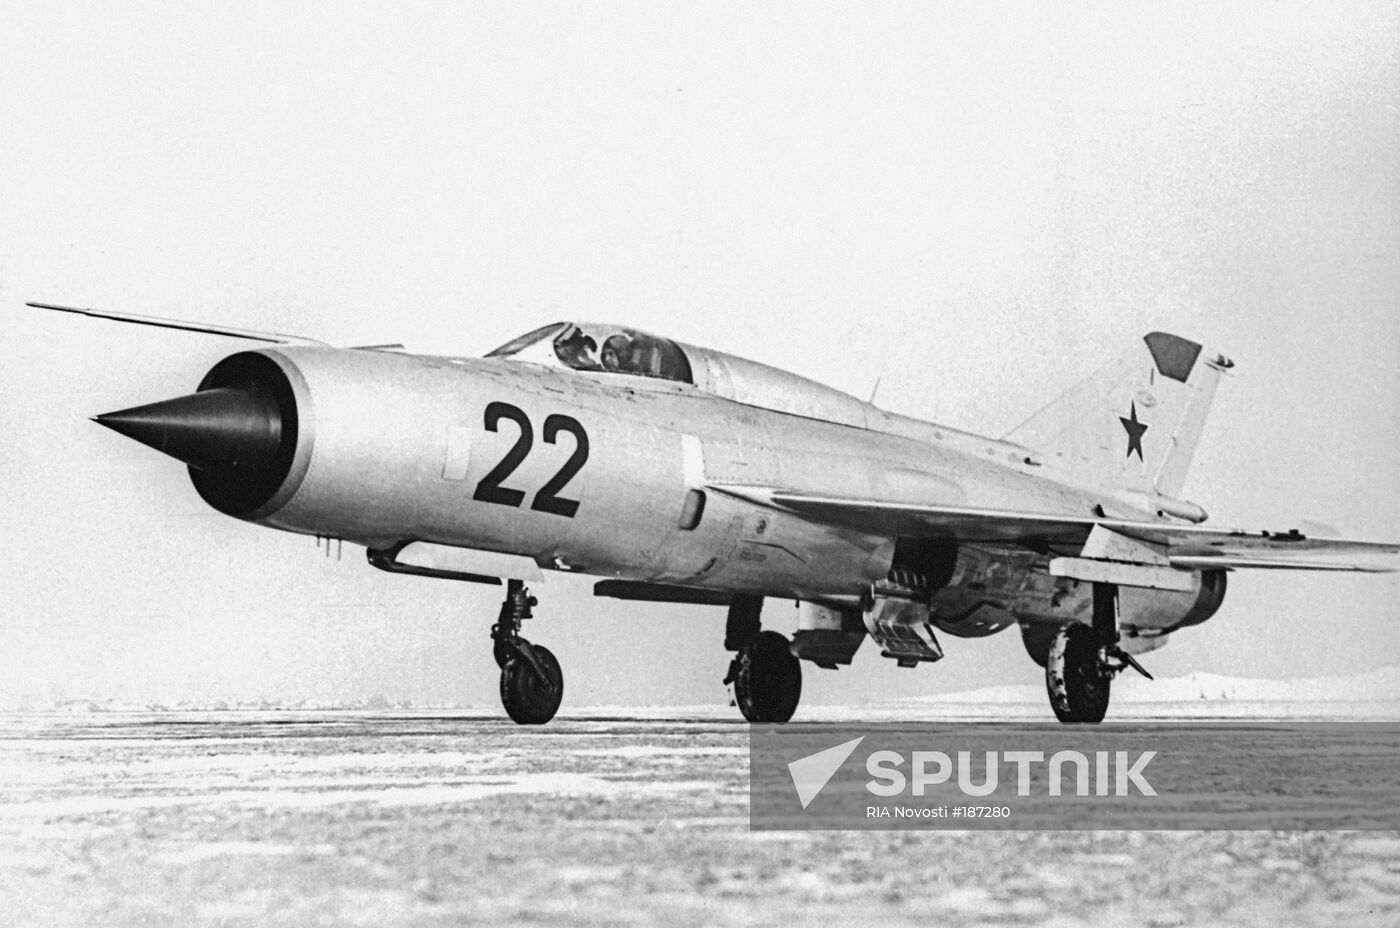 Soviet MIG-21 fighter